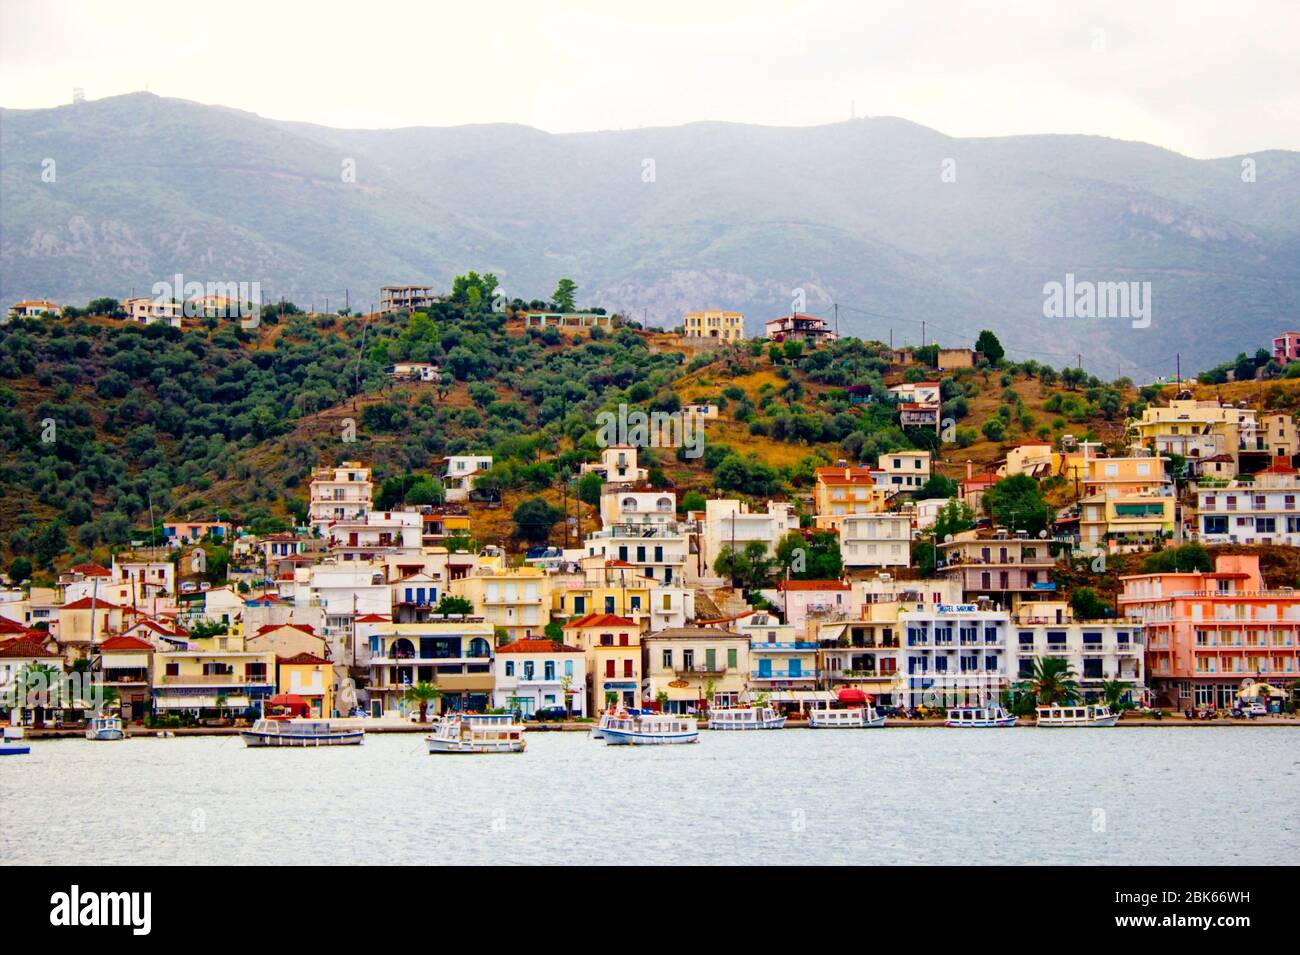 The town of Poros, Poros island, Saronic Gulf, Greece. Stock Photo